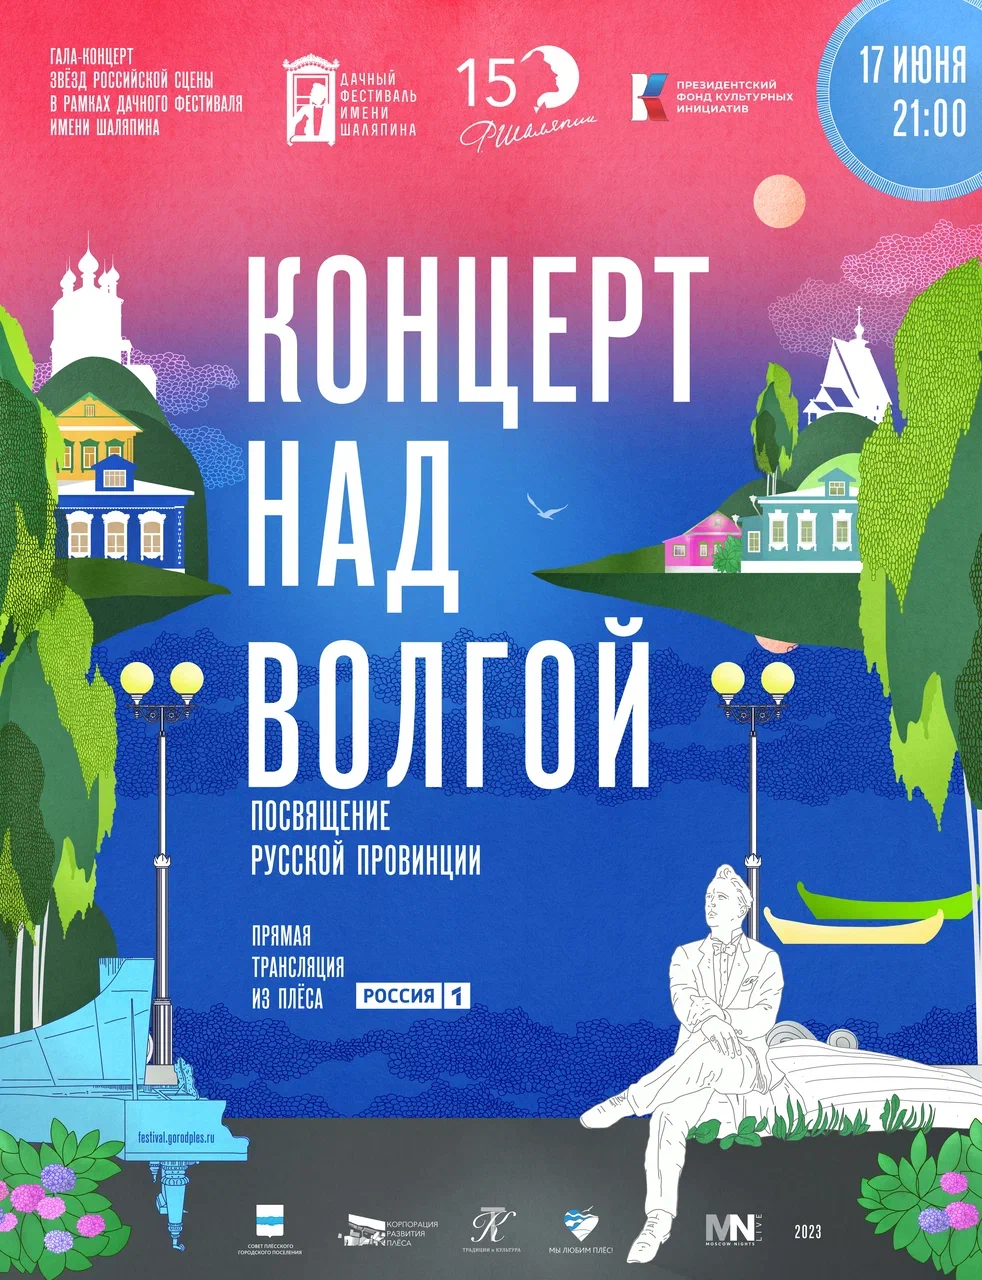 На Дачном фестивале имени Шаляпина в Плёсе выступят Юрий Башмет, Светлана Захарова, Ильдар Абдразаков и другие звезды